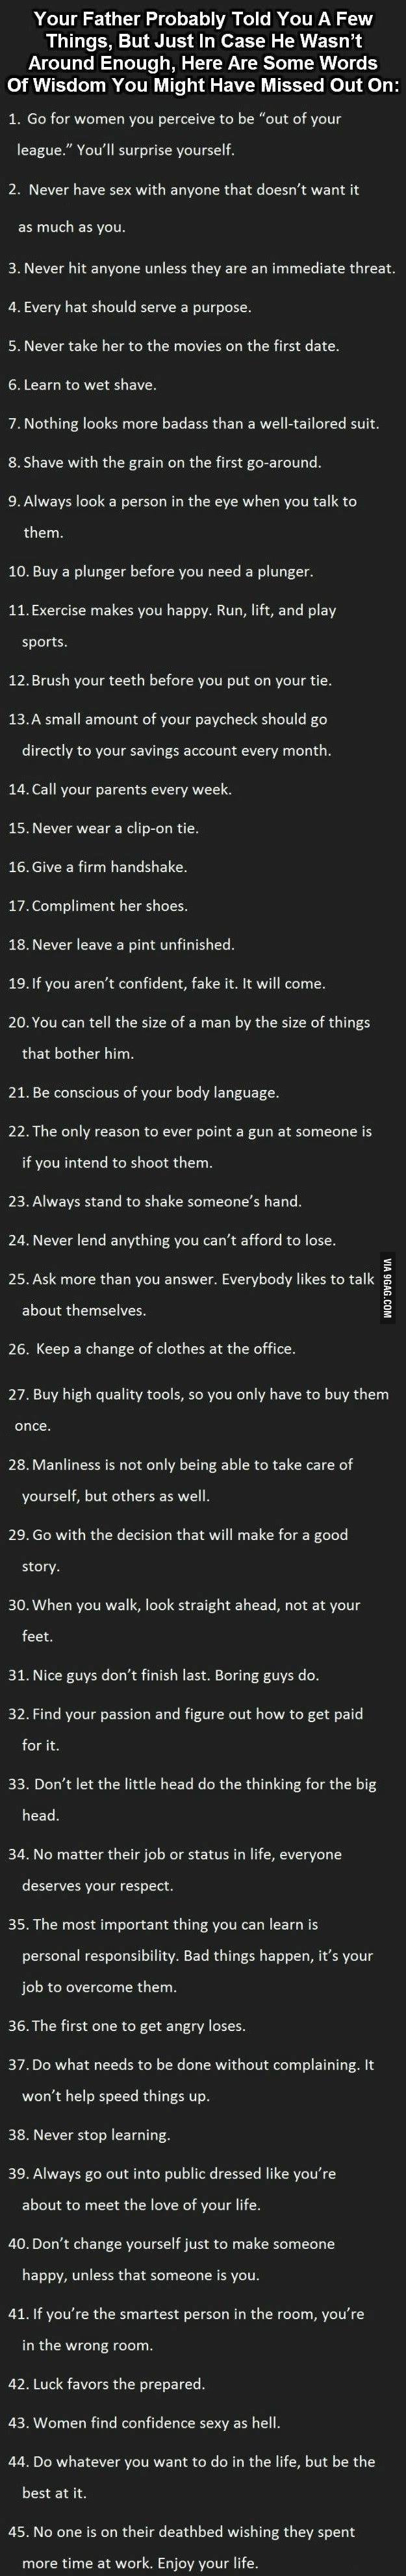 Rules For Men 9gag